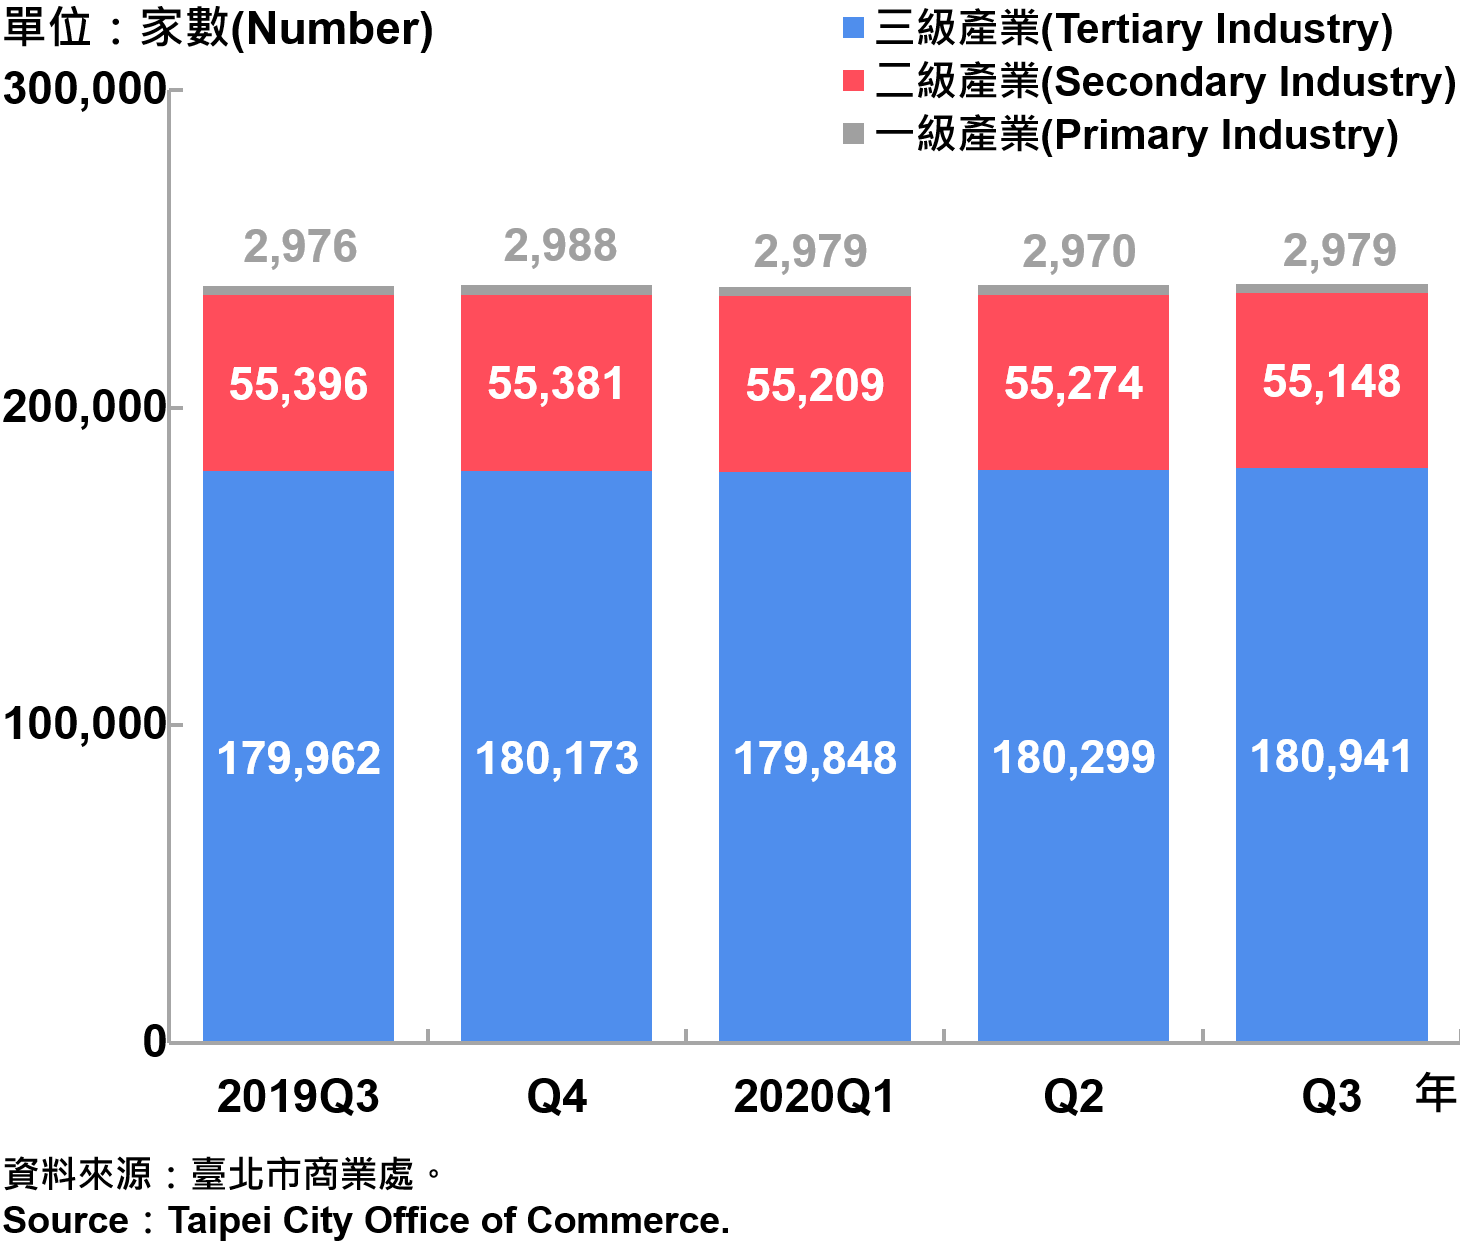 臺北市一二三級產業登記家數—2020Q3 Number of Primary , Secondary and Tertiary Industry in Taipei City—2020Q3